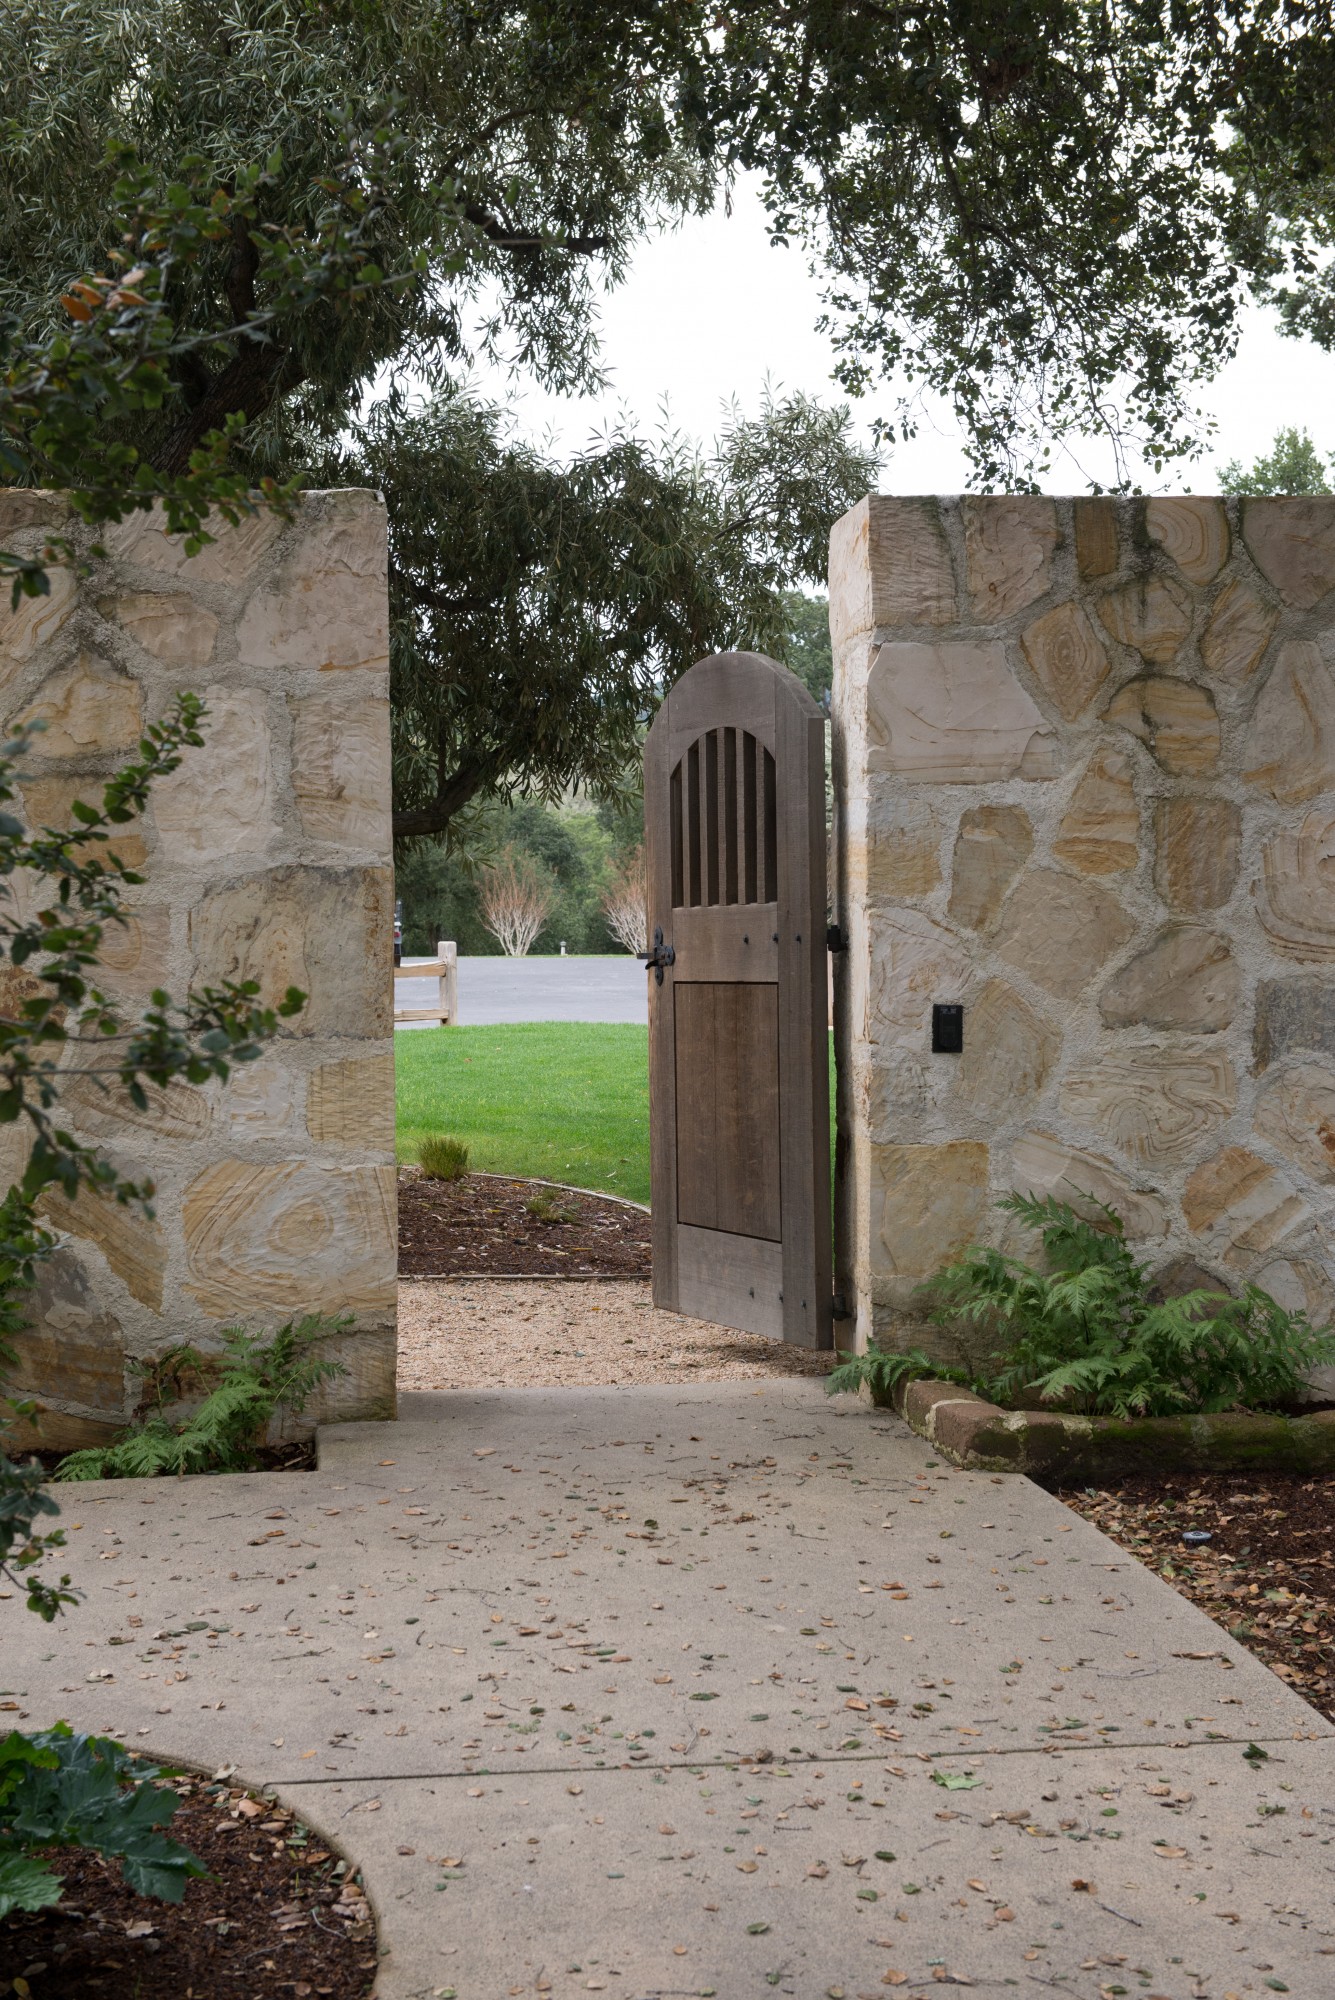 Holman Ranch, California winery, California coast wedding venue, arched wood door